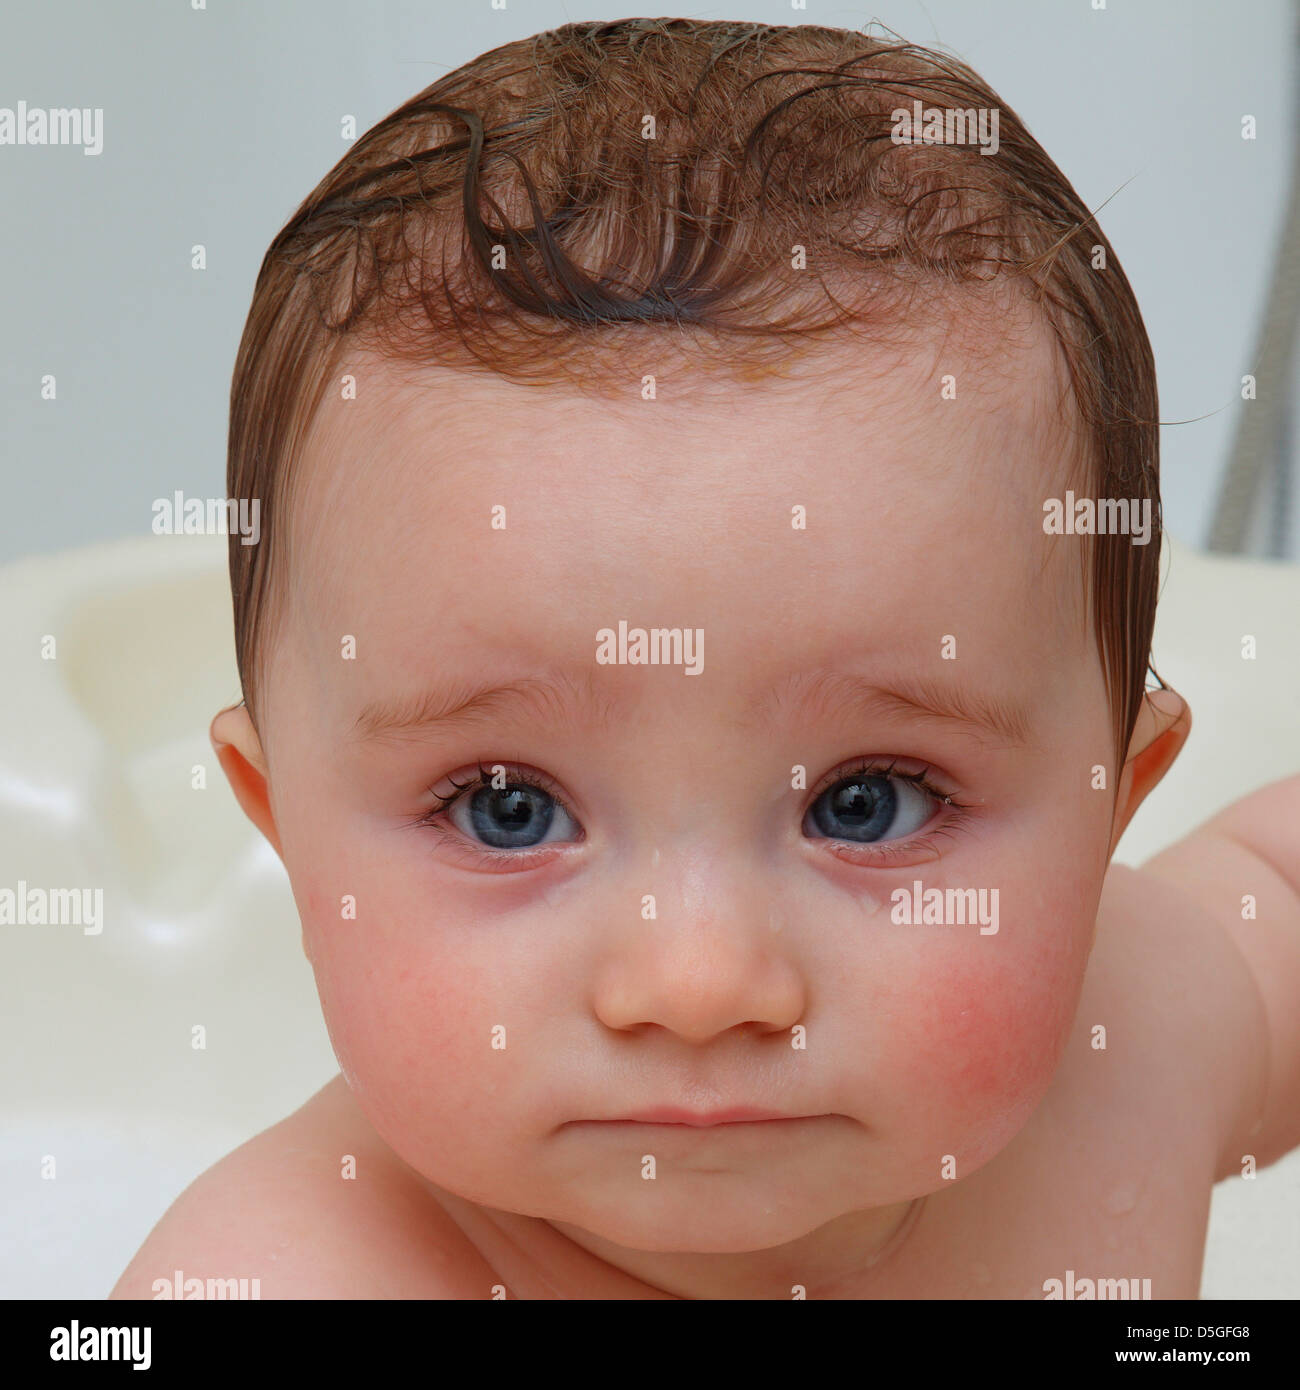 Huit mois bébé fille à bath avec de grands yeux bleus et holding lèvre inférieure avec la lèvre supérieure et de grands yeux bleus. Banque D'Images